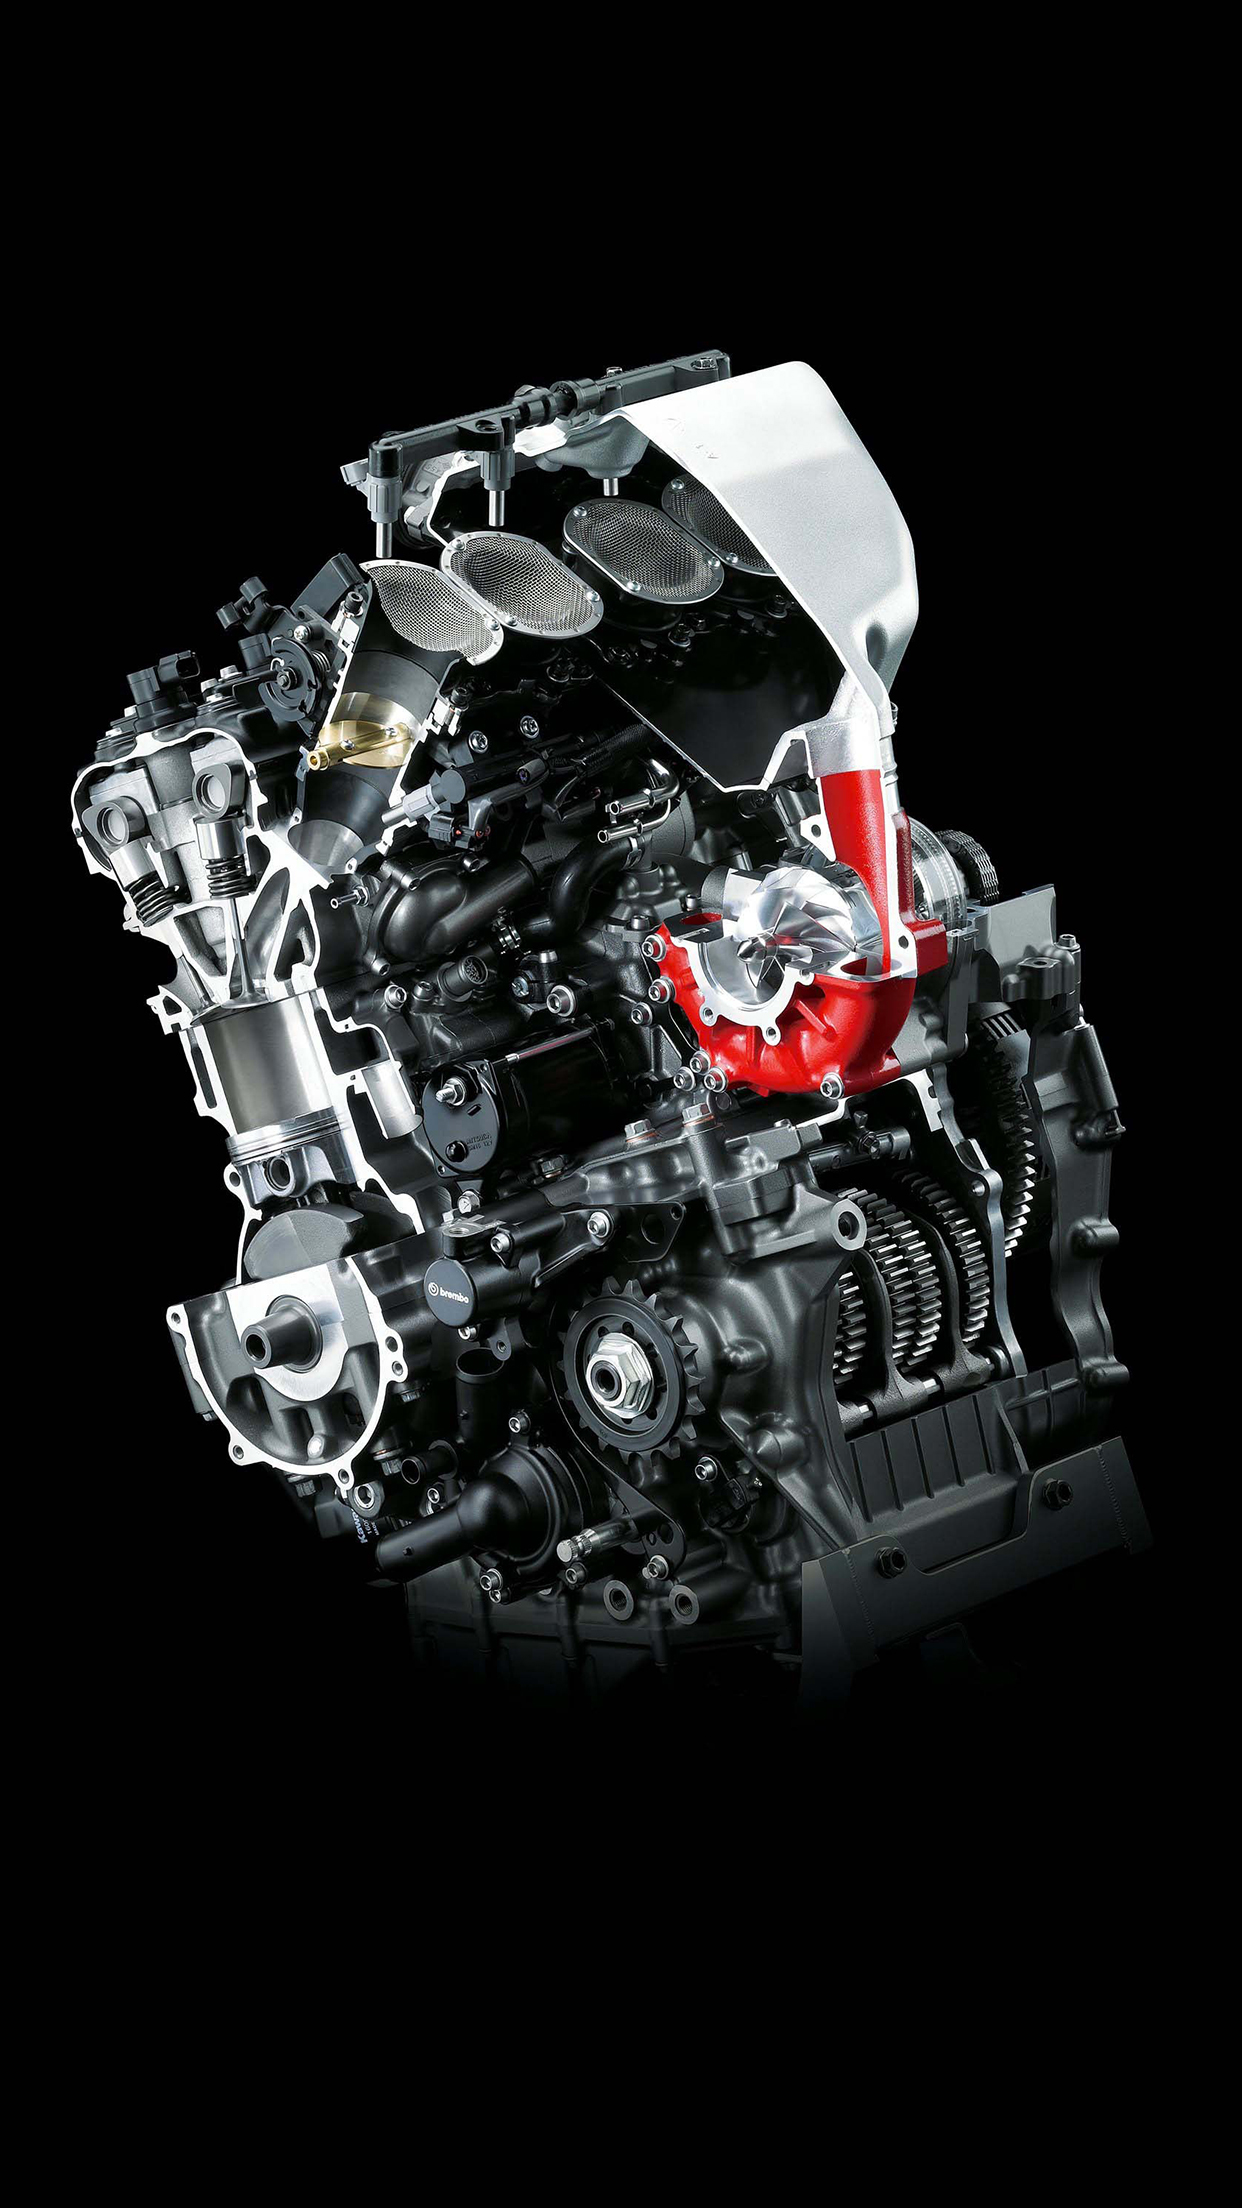 Kawasaki H2r Engine